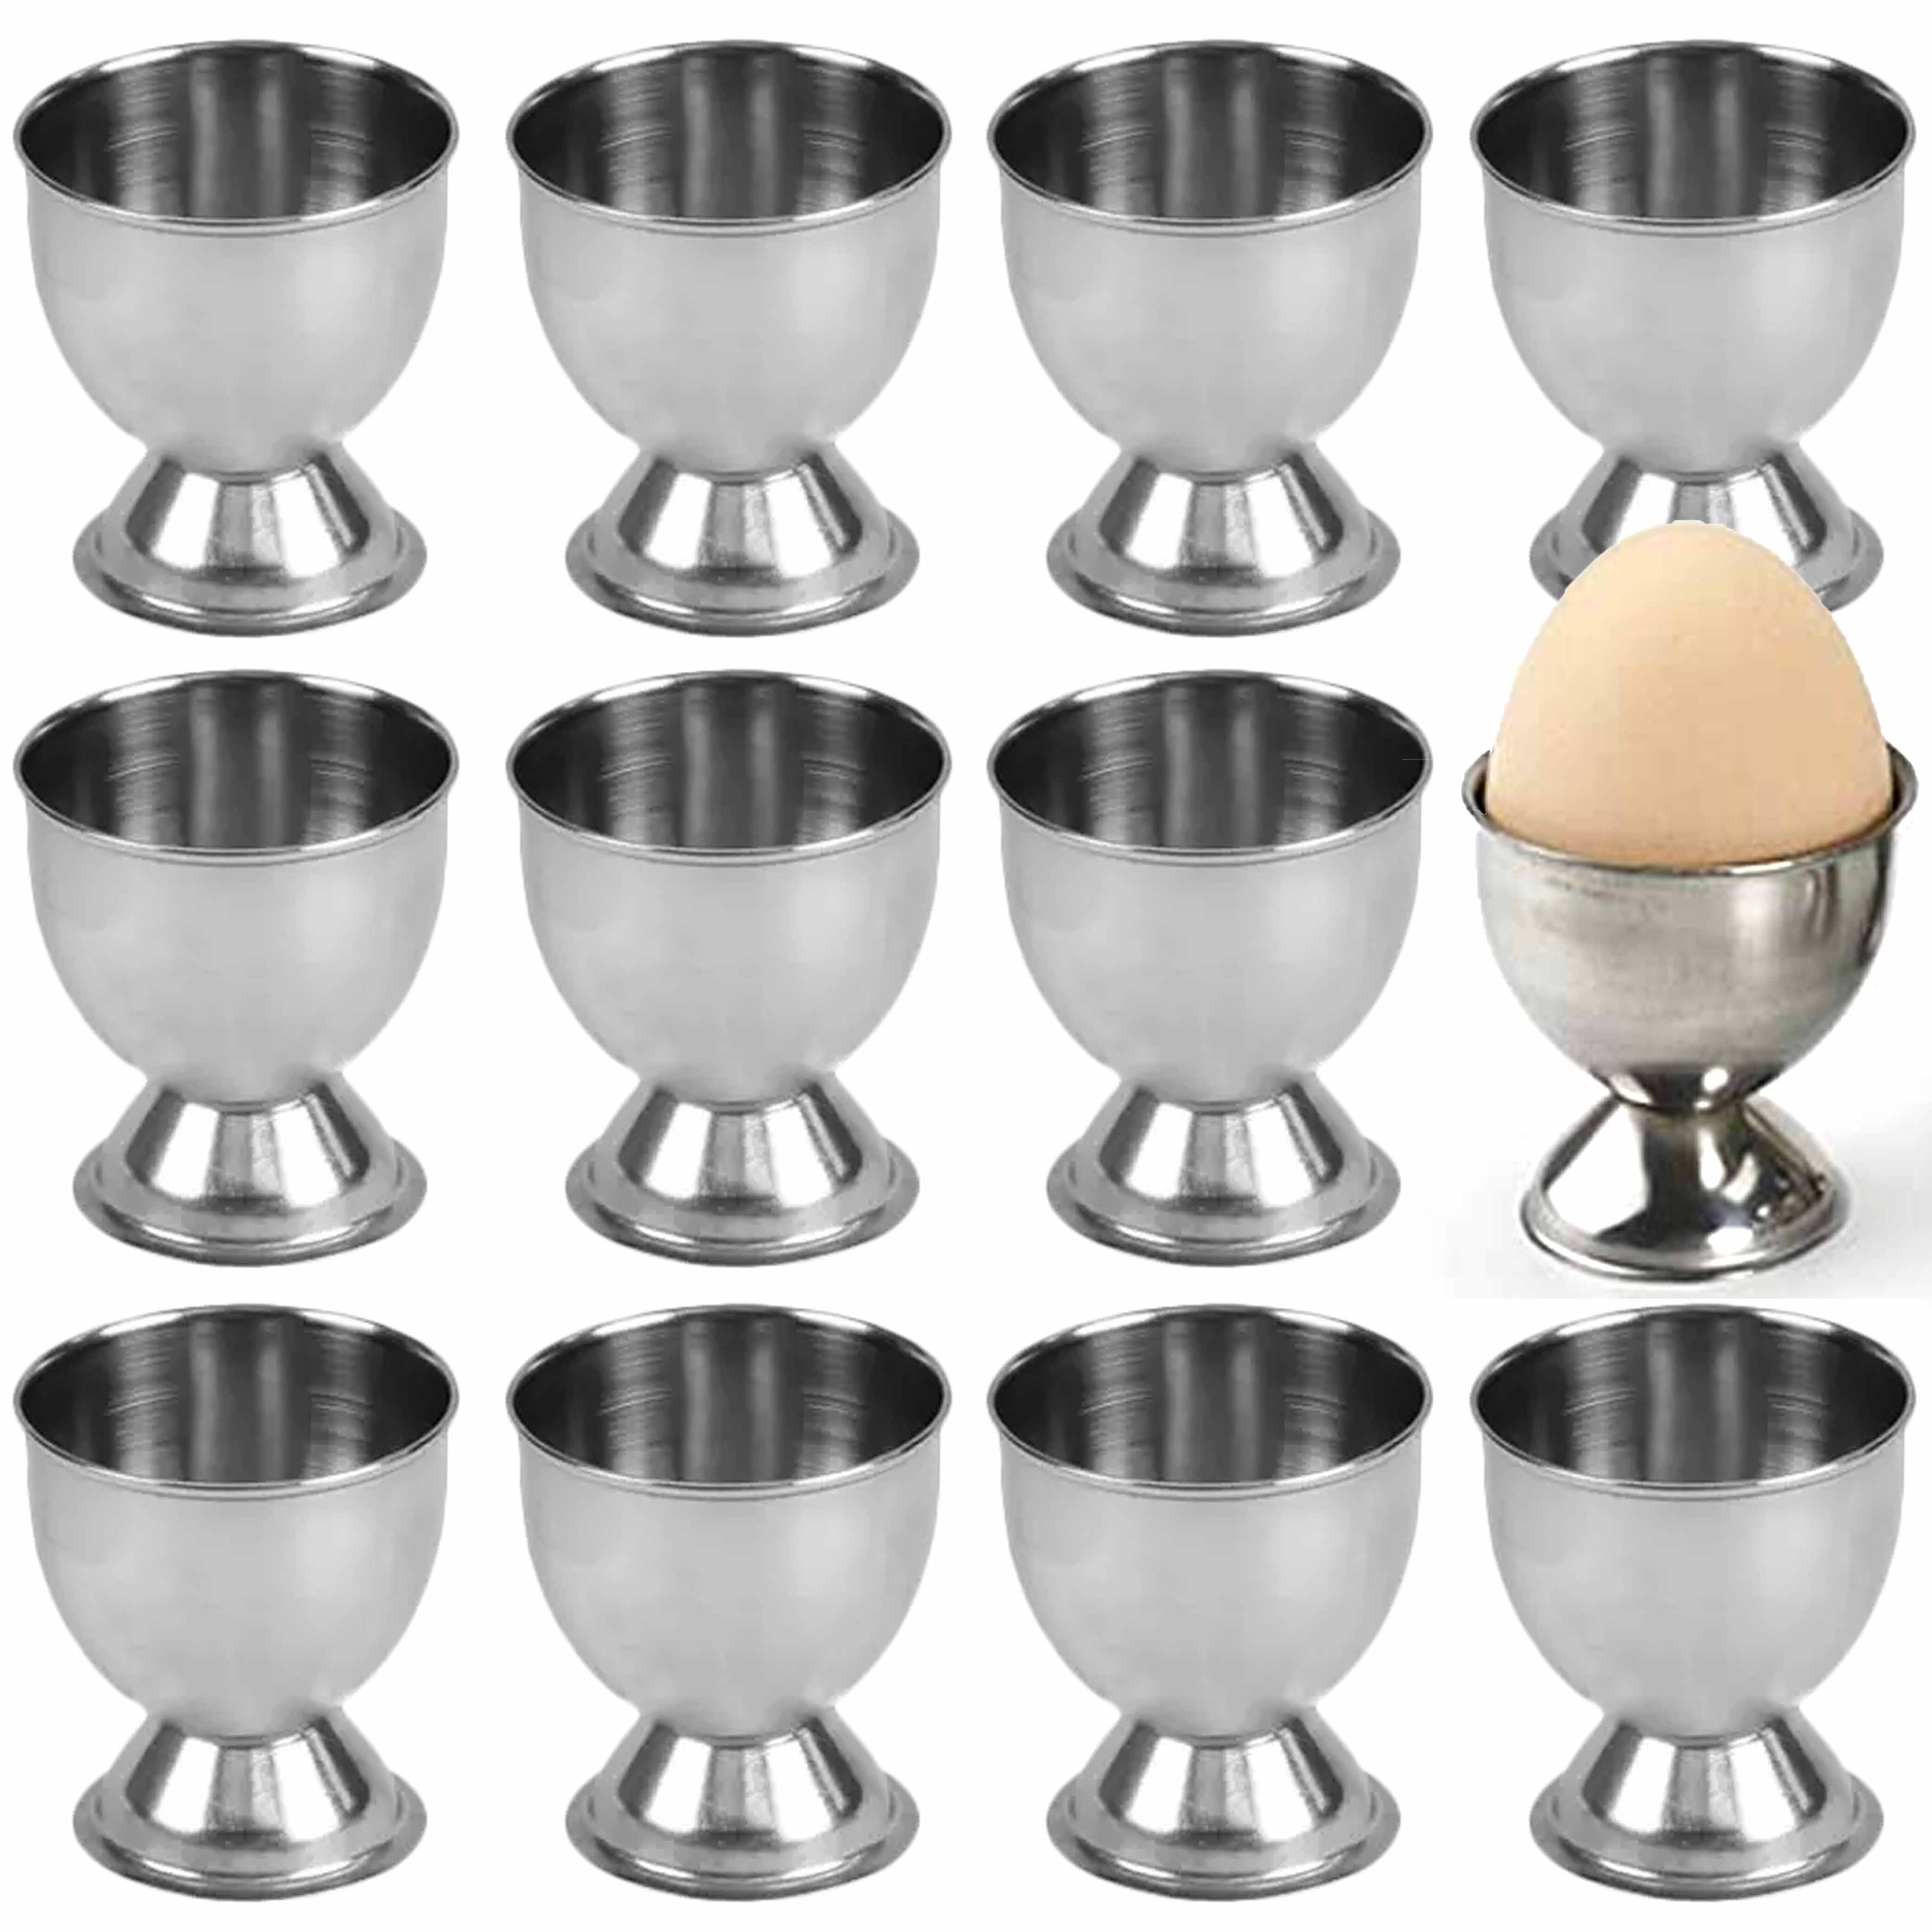 Stainless Steel Soft Boiled Egg Egg Holder Tabletop Cup Handy Stainless  Steel Boiled Egg Cups 1019